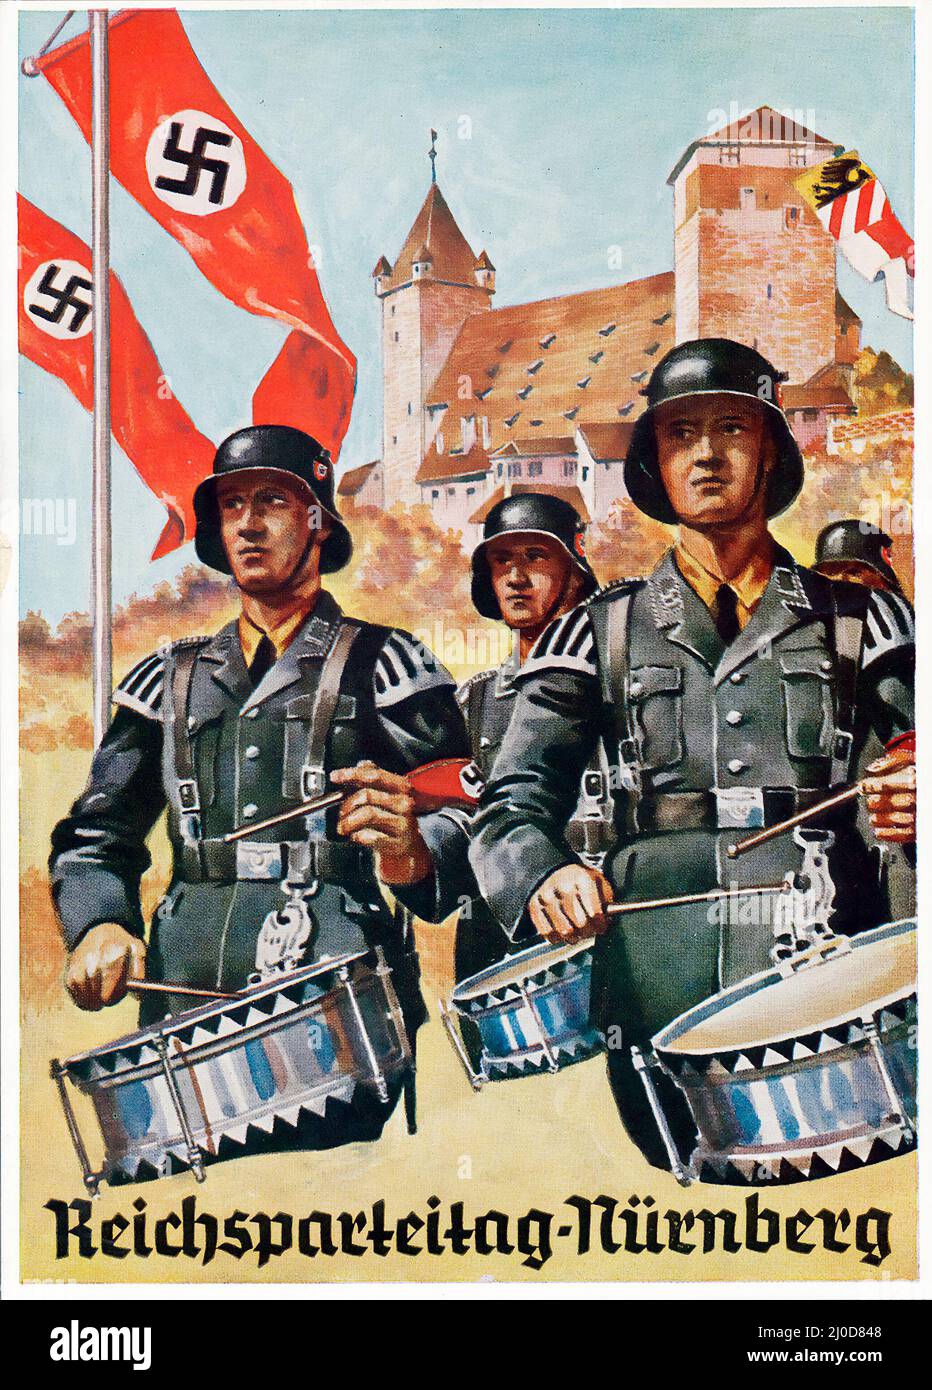 Deutsche Nazi-Propaganda - Reichsparteitag Nürnberg. Postkarte mit einem Gemälde von uniformierten SS-Musikern (marschierende Trommler) 1936 Stockfoto